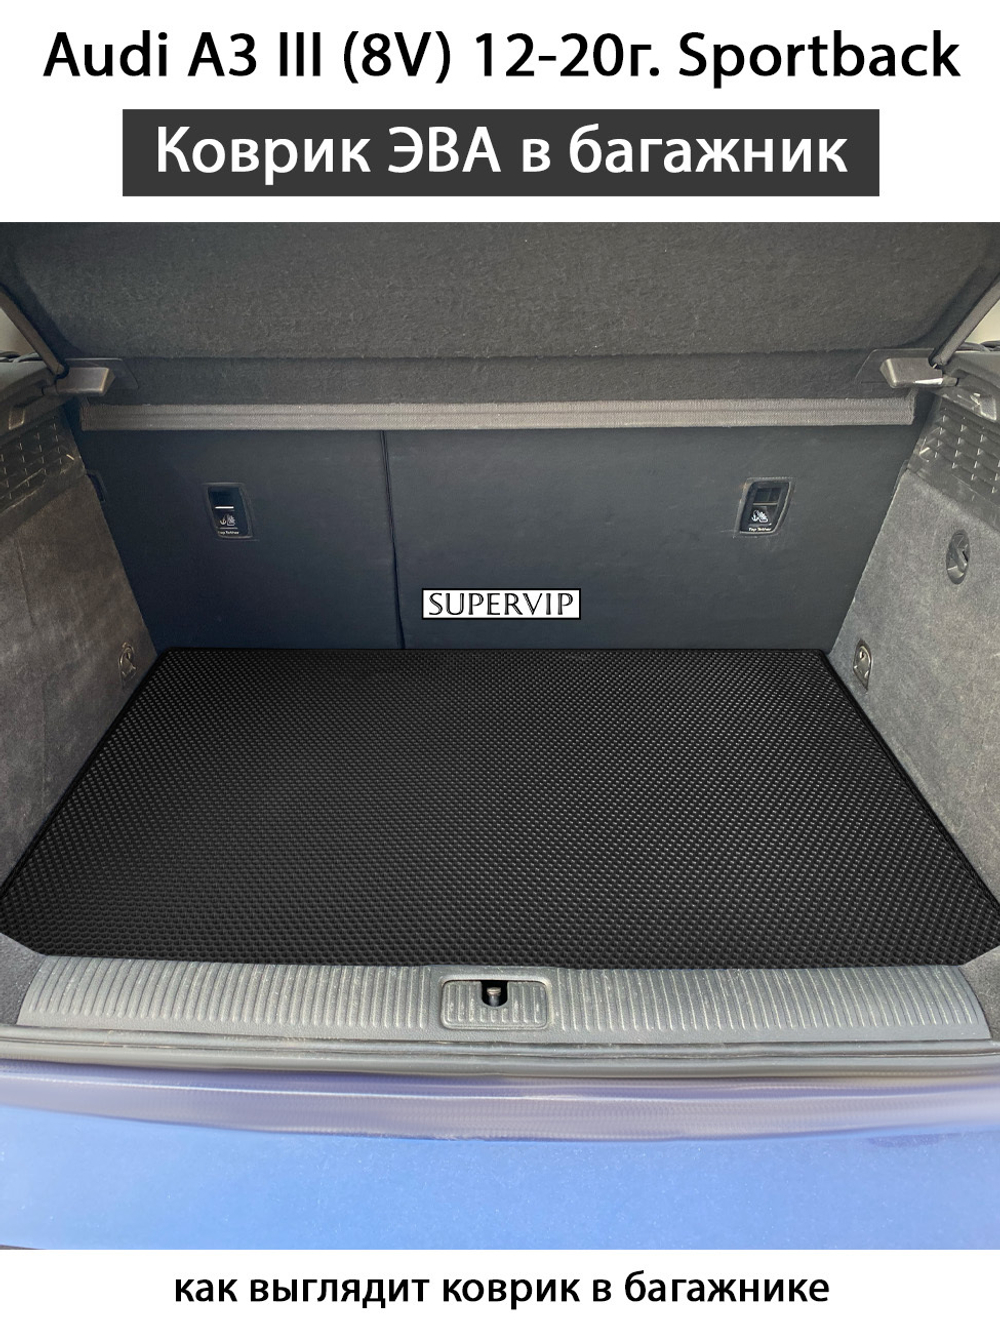 коврик ева в багажнике автомобиля audi a3 III 8v sportback от supervip